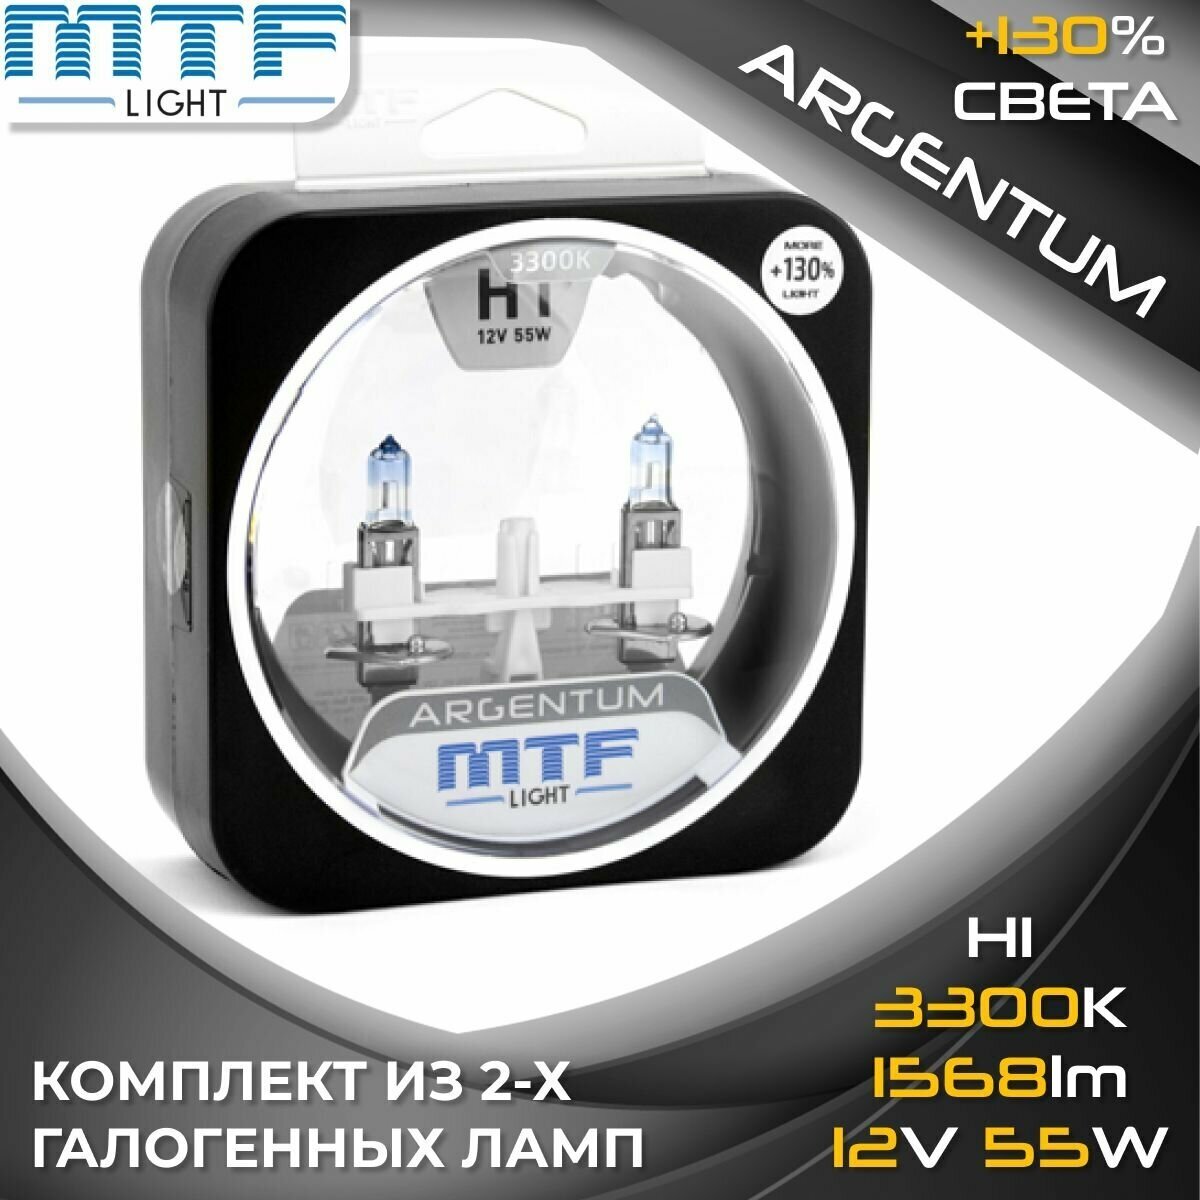 Галогенные автолампы MTF Light серия ARGENTUM +130% H1, H3A1201 12V, 55W (комплект 2 шт.)